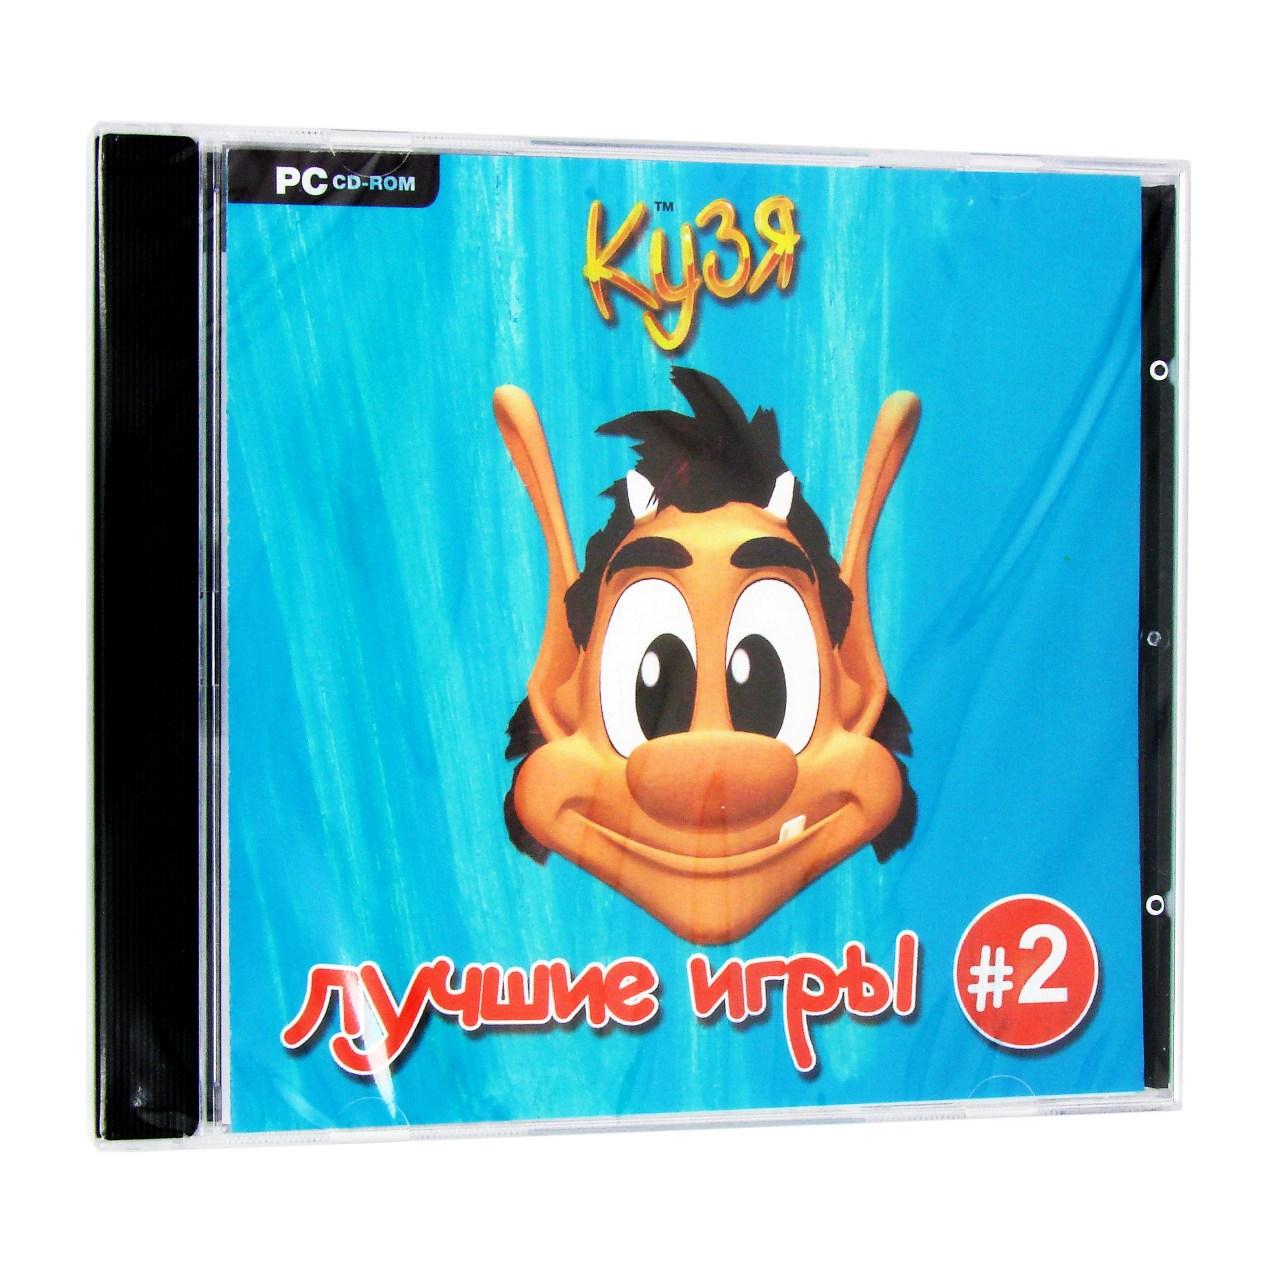 Компьютерный компакт-диск Кузя 2 (ПК), фирма "Новый диск", 1CD